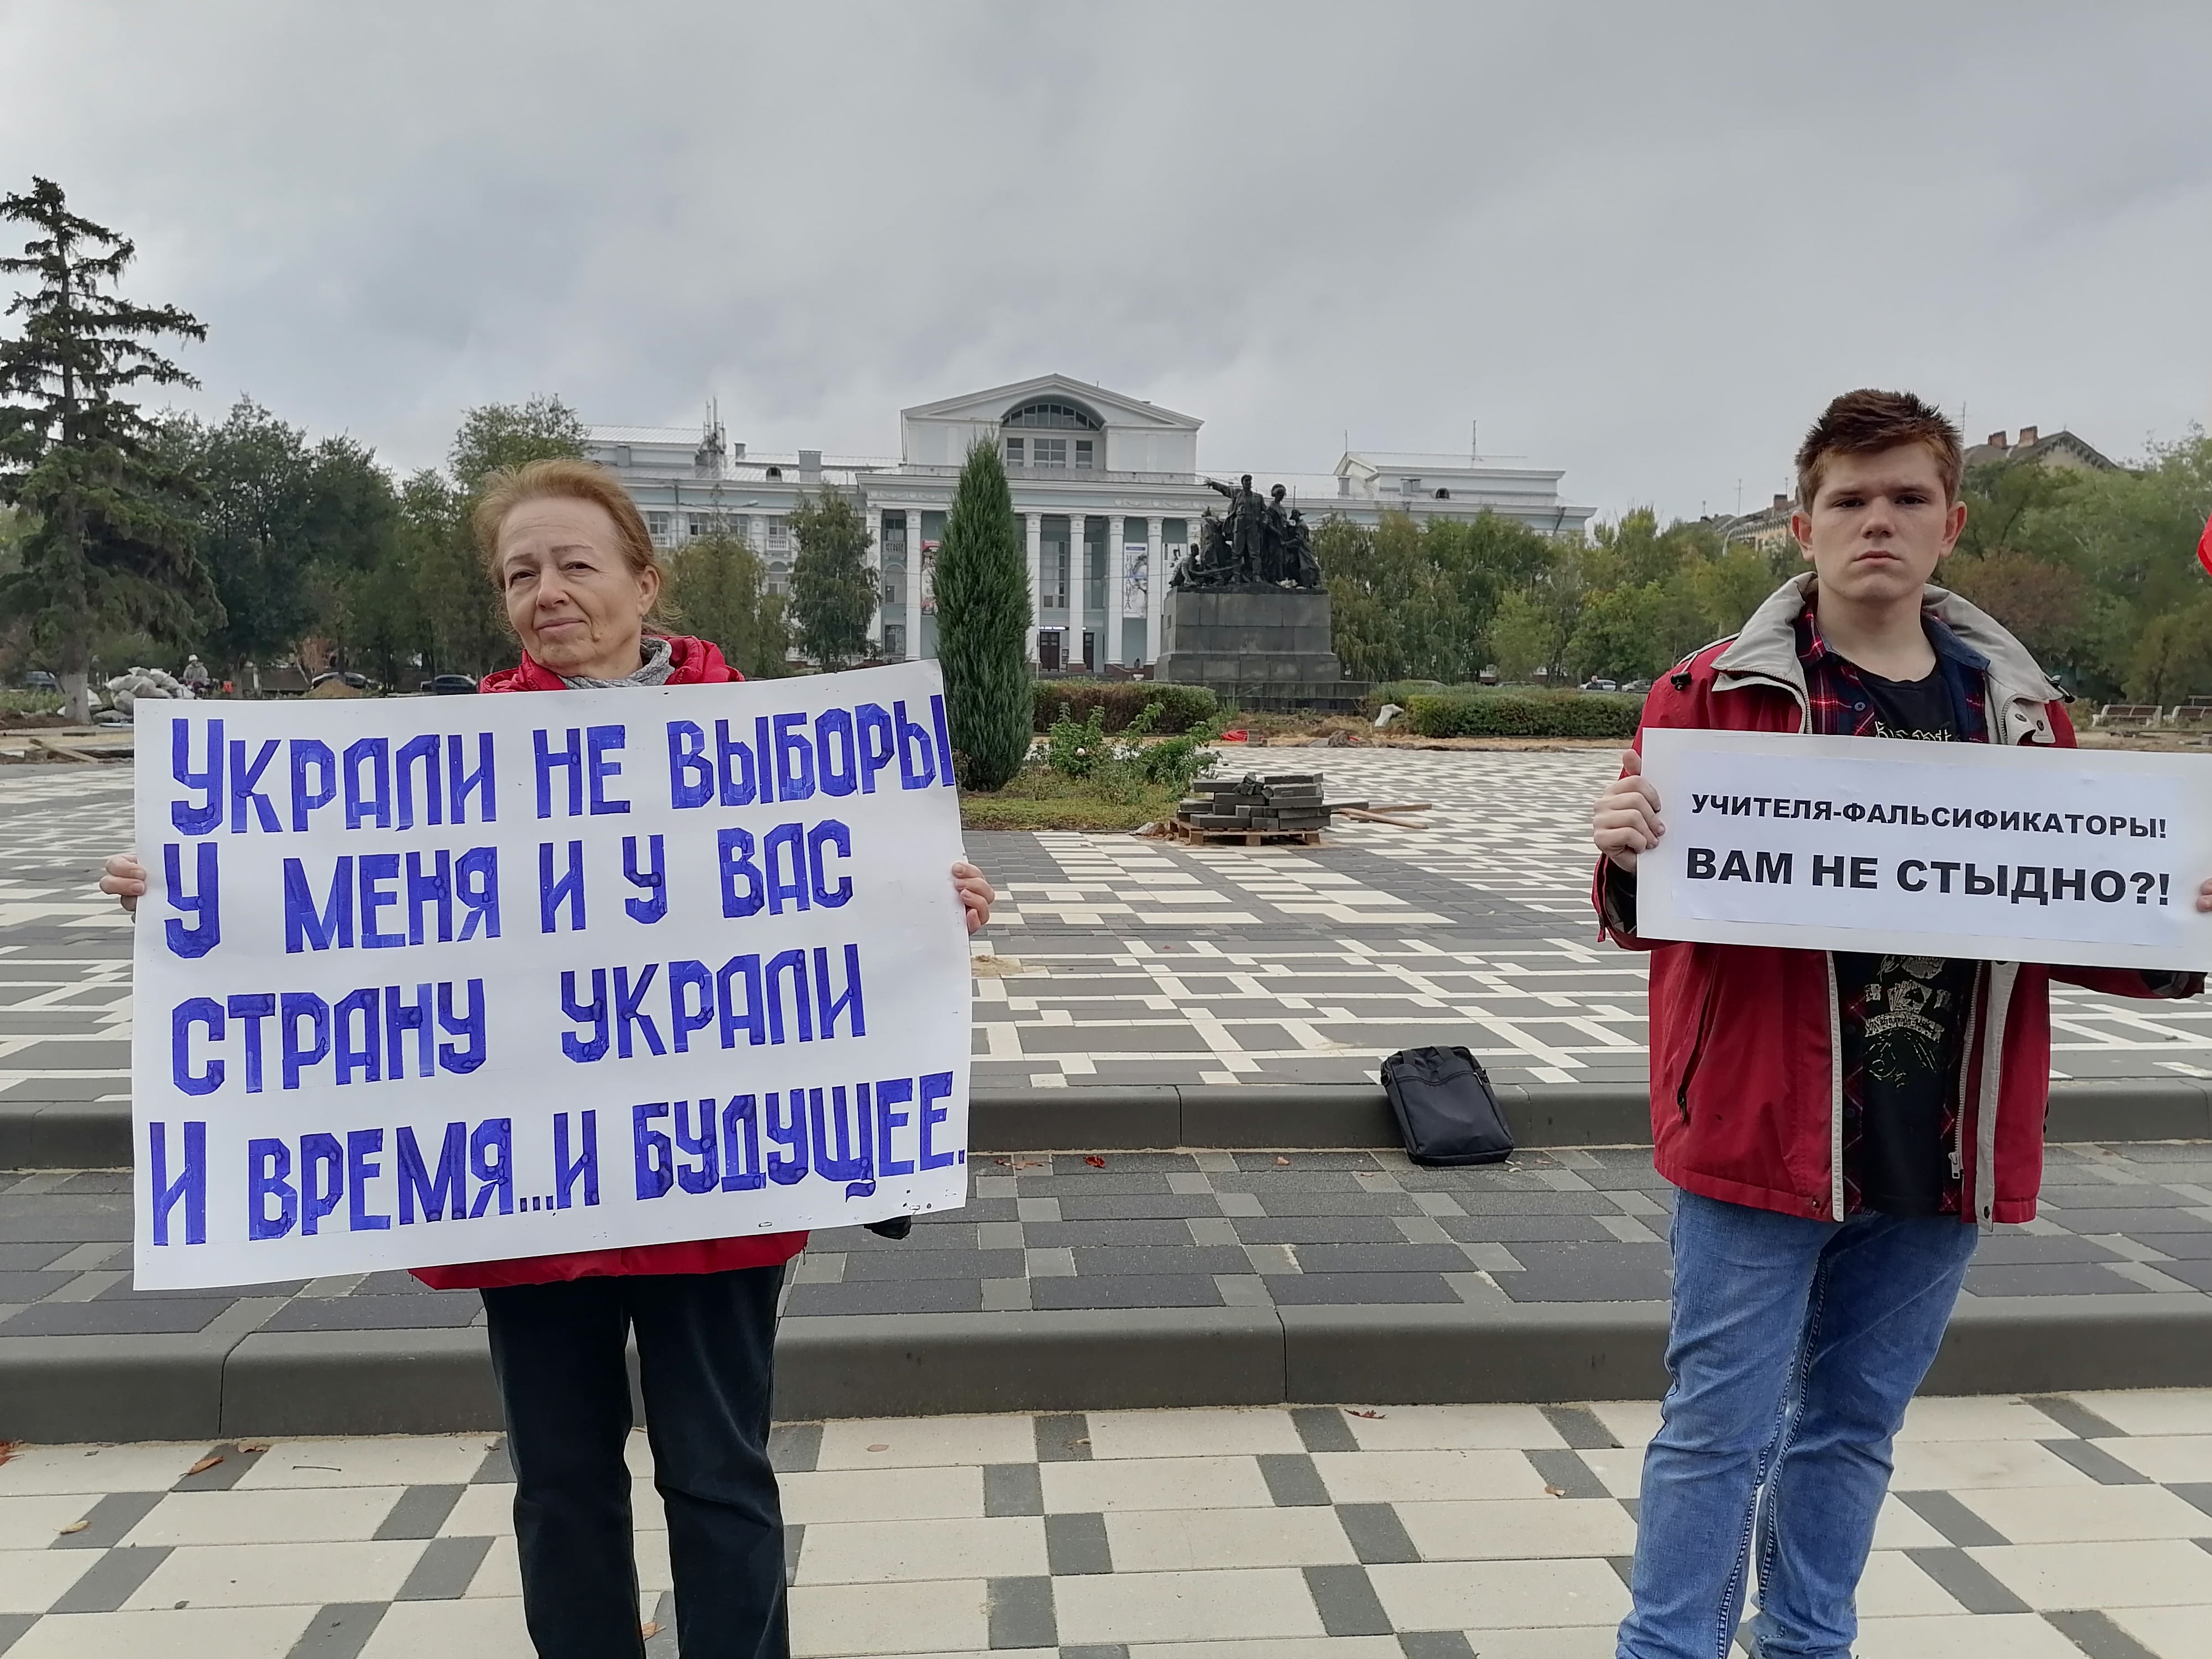 Татьяна Карпова (слева) на пикете. Волгоград, 25 сентября 2021 года. Фото Татьяны Филимоновой для "Кавказского узла".